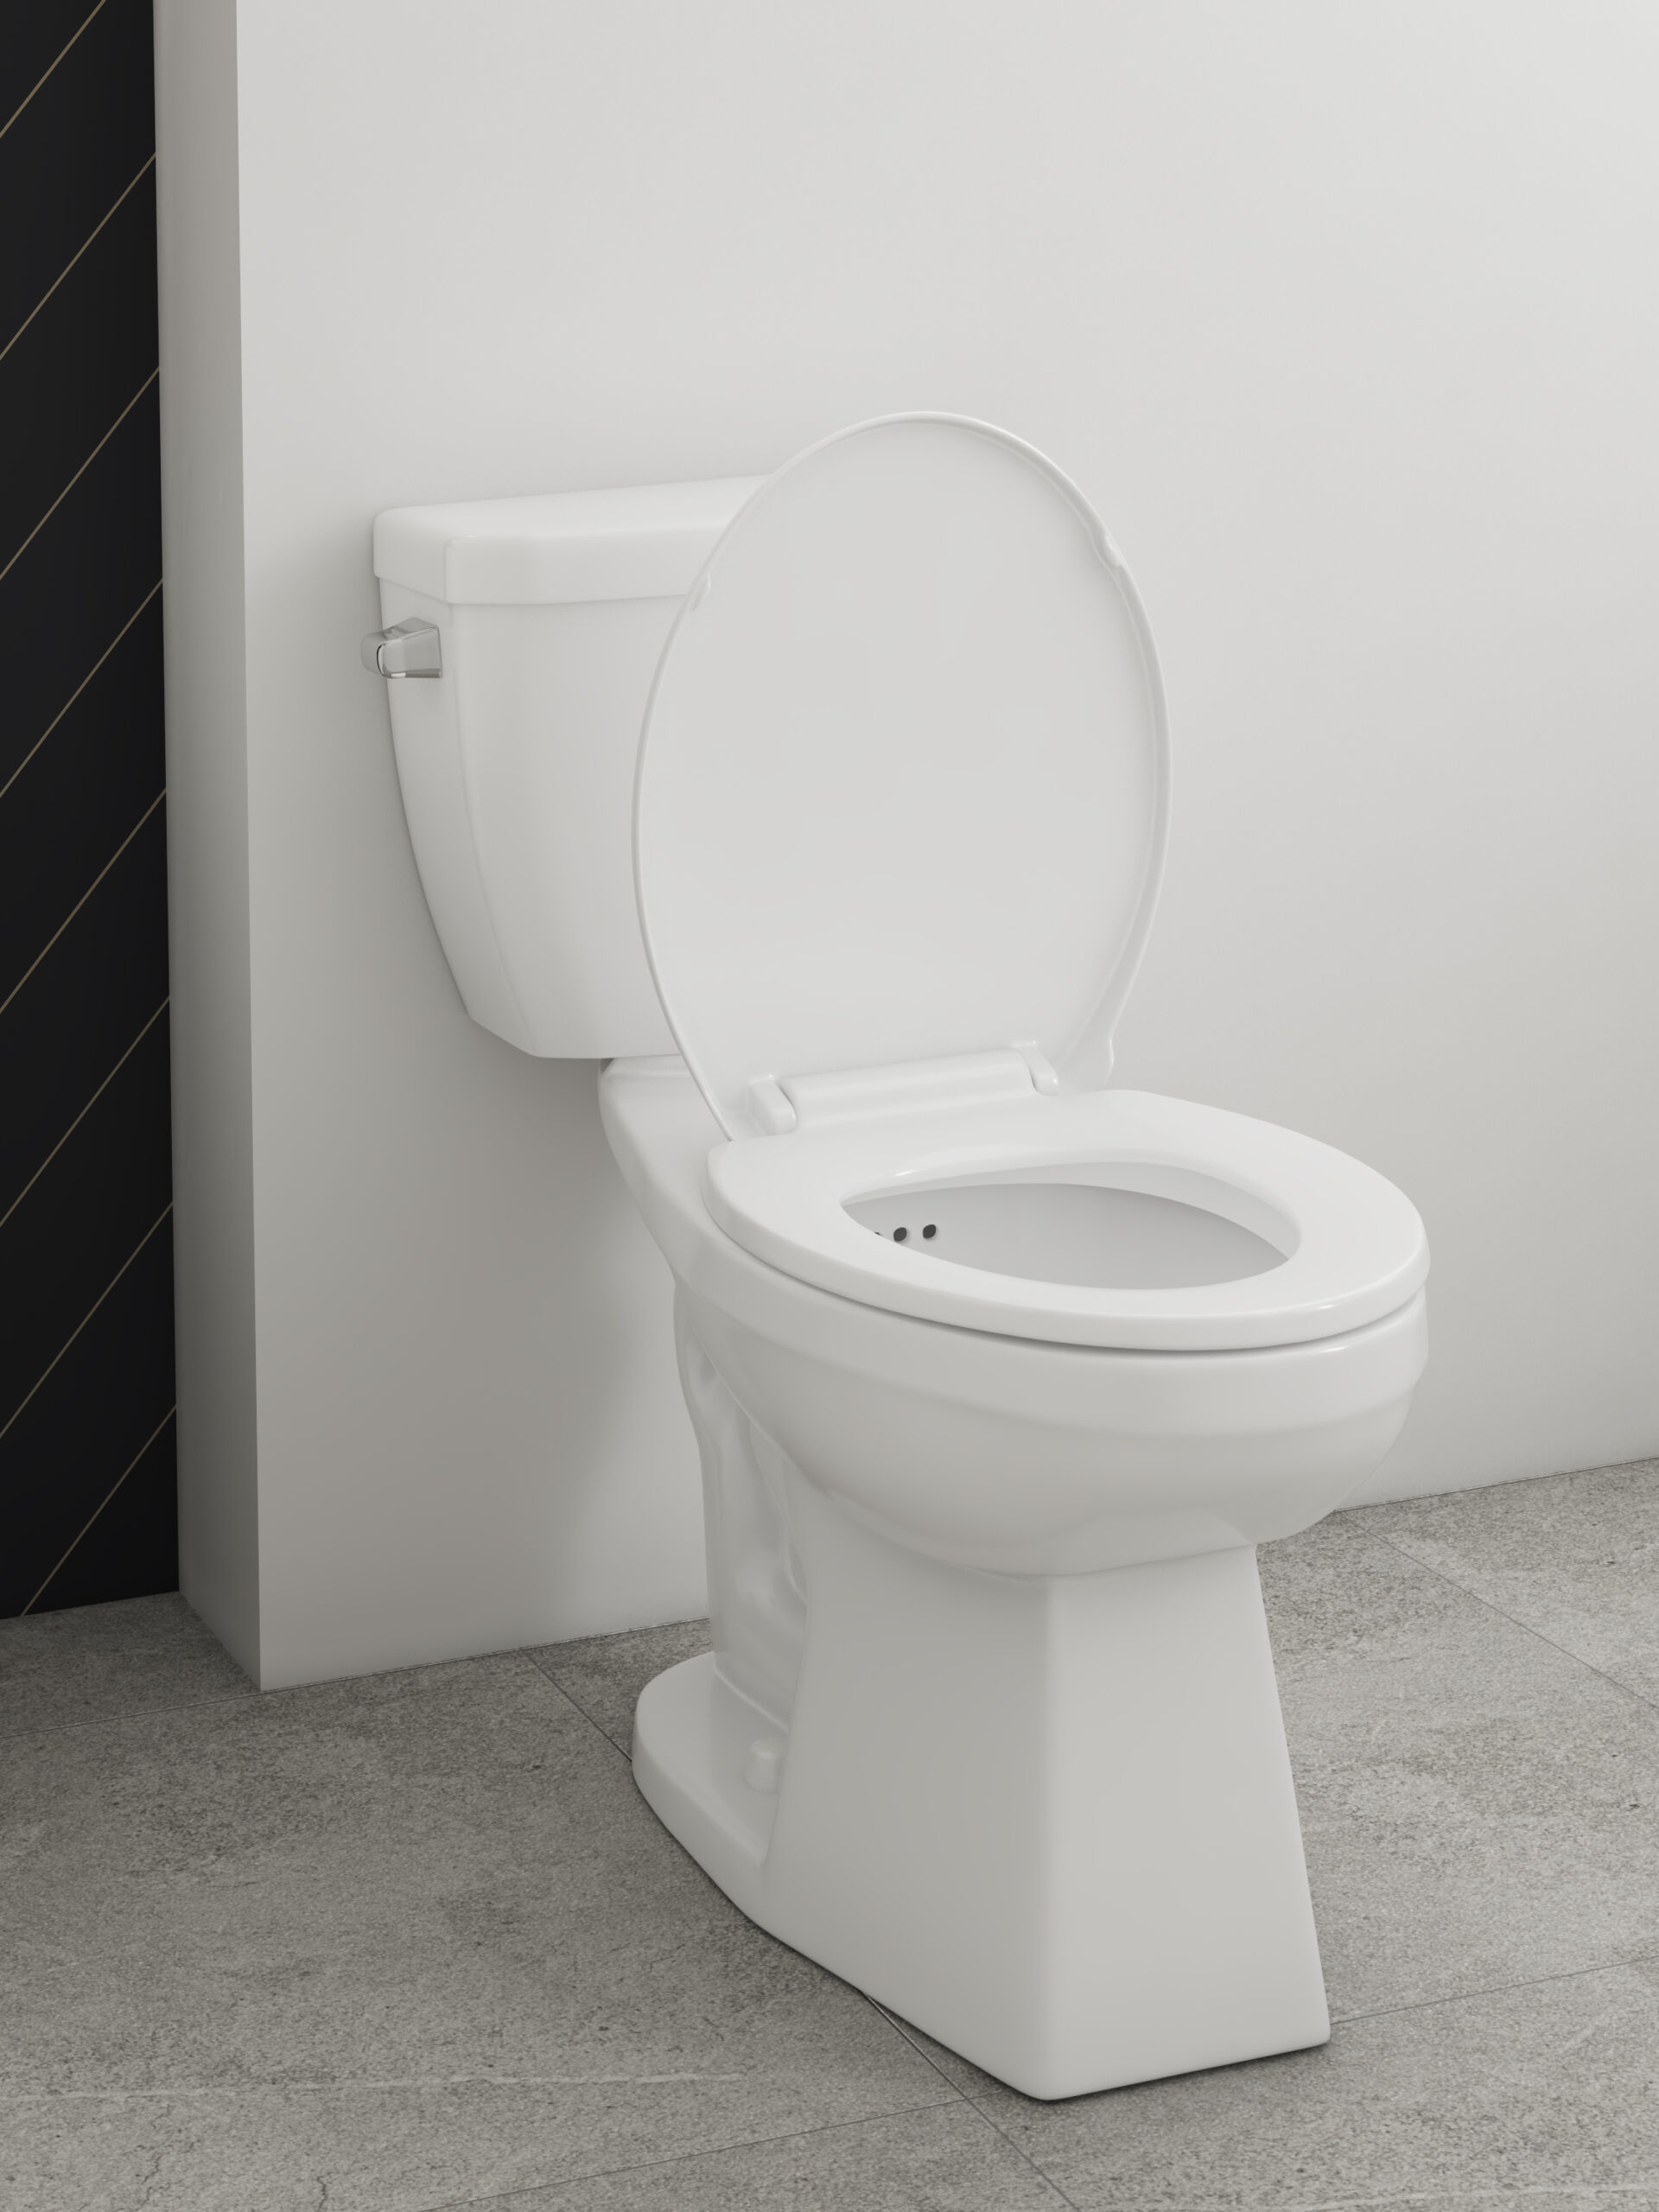 Crista Flush Guard Complete 2-Piece Toilet, 4720FGHVU - Closeup Angle View Room Scene